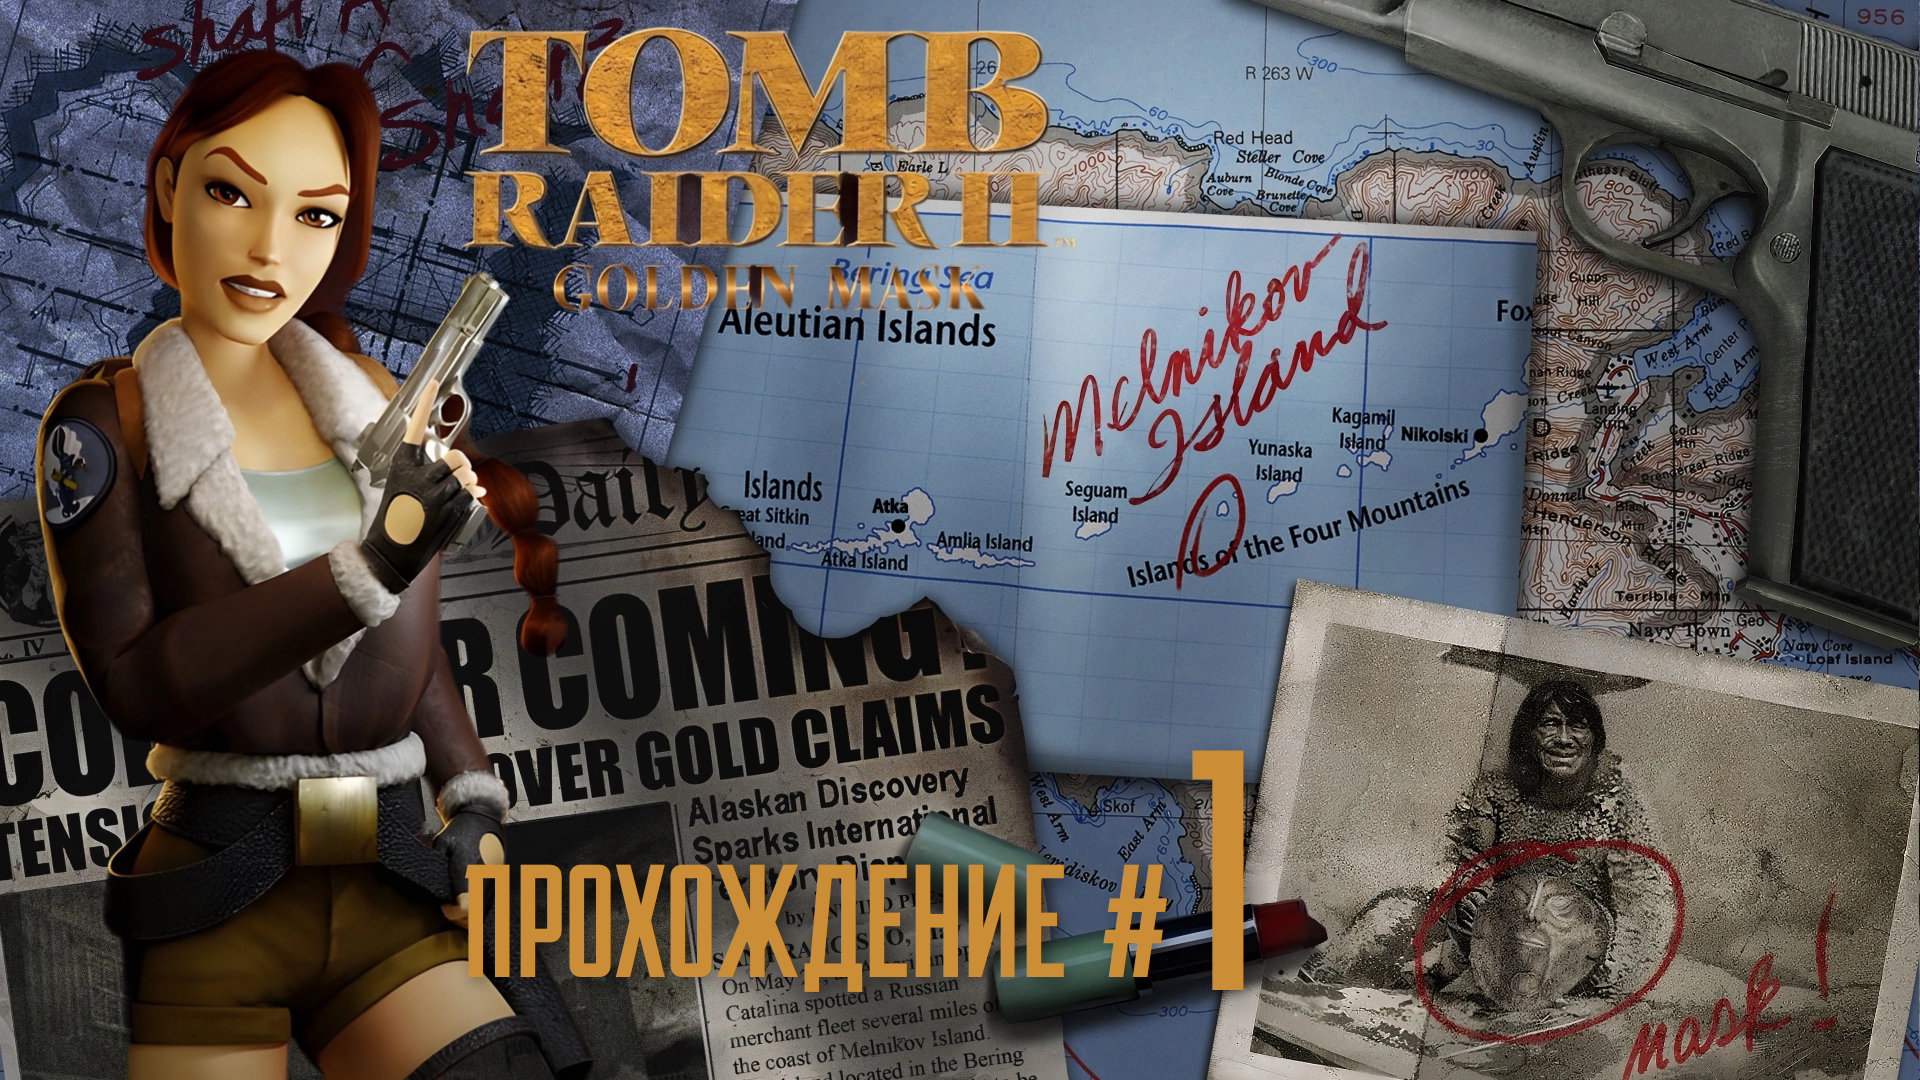 TOMB RAIDER 2 REMASTERED ДЛС  Золотая маска Golden Mask DLC - Прохождение #1. Холодная война